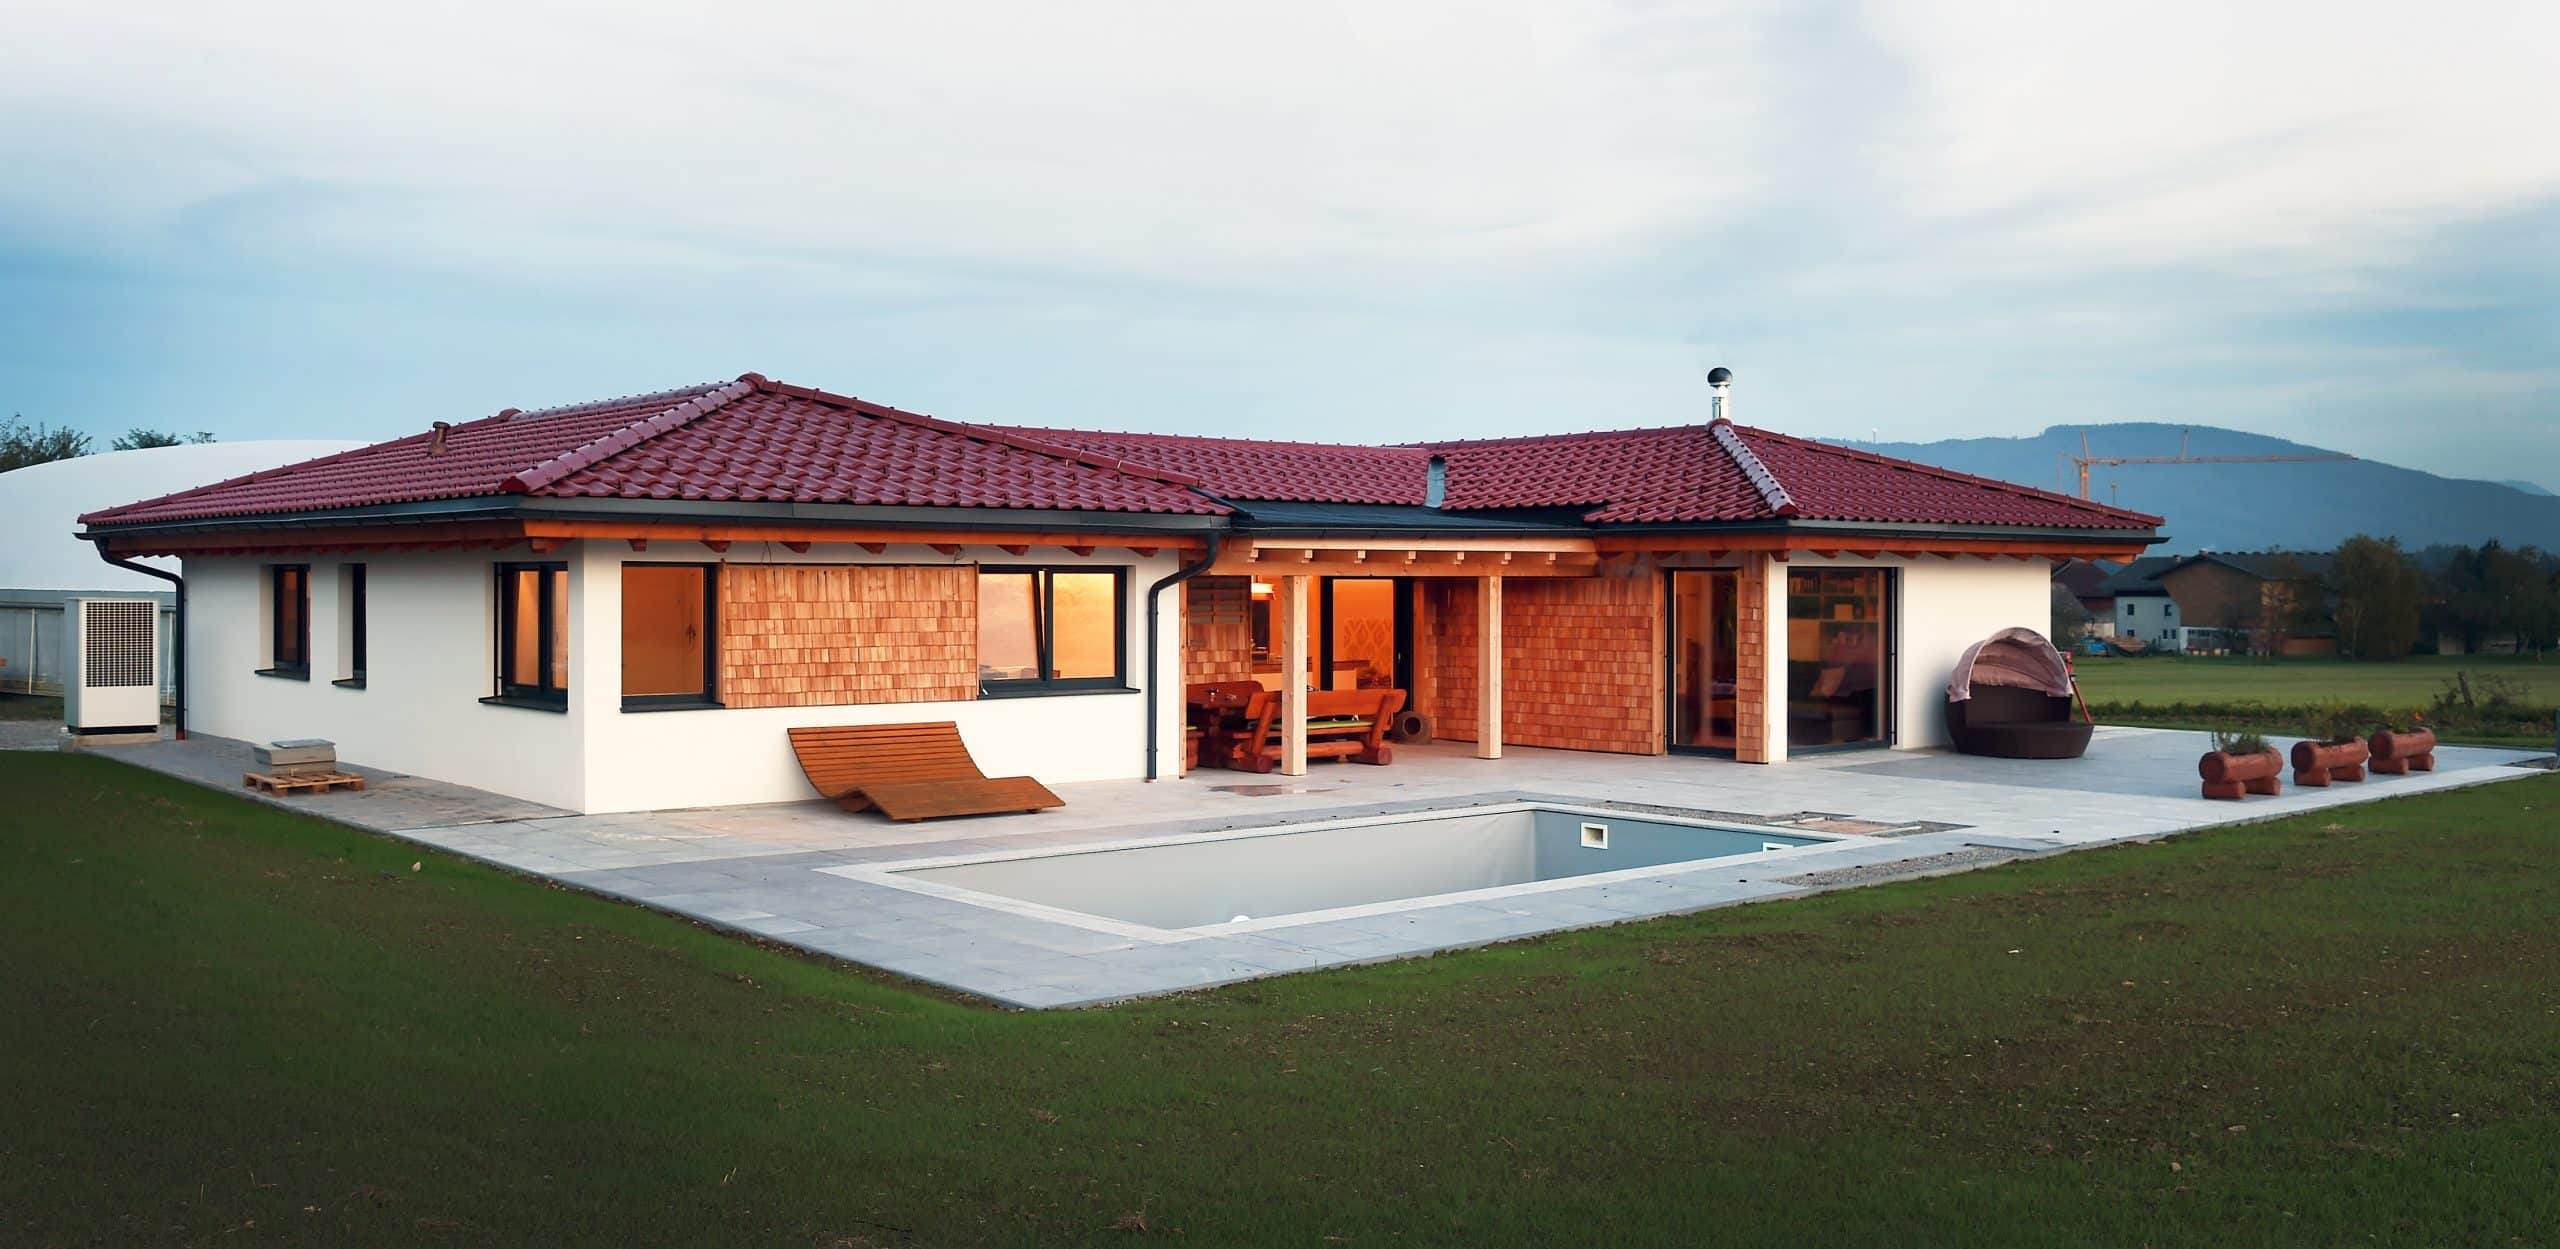 Ein schöner Bungalow mit rotem Dach, überdachter Terrasse mit einer Sitzgruppe aus Holz und großem Garten mit rechteckigem Pool von ERLER BAU GmbH.